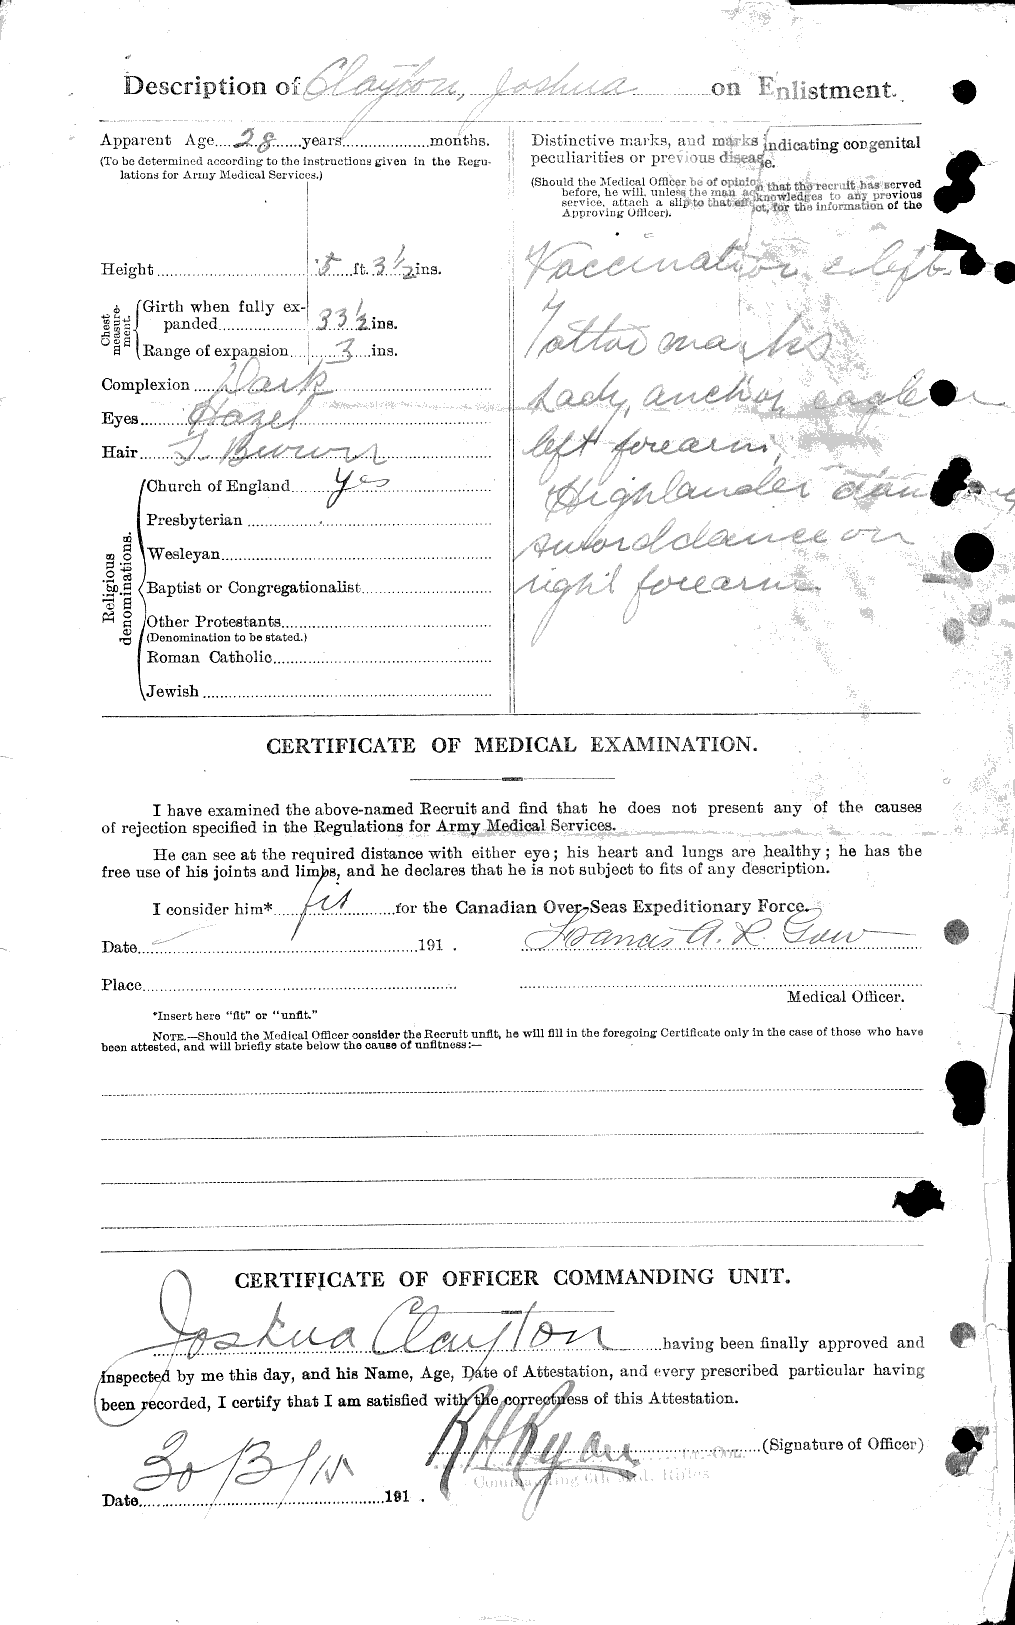 Dossiers du Personnel de la Première Guerre mondiale - CEC 023717b